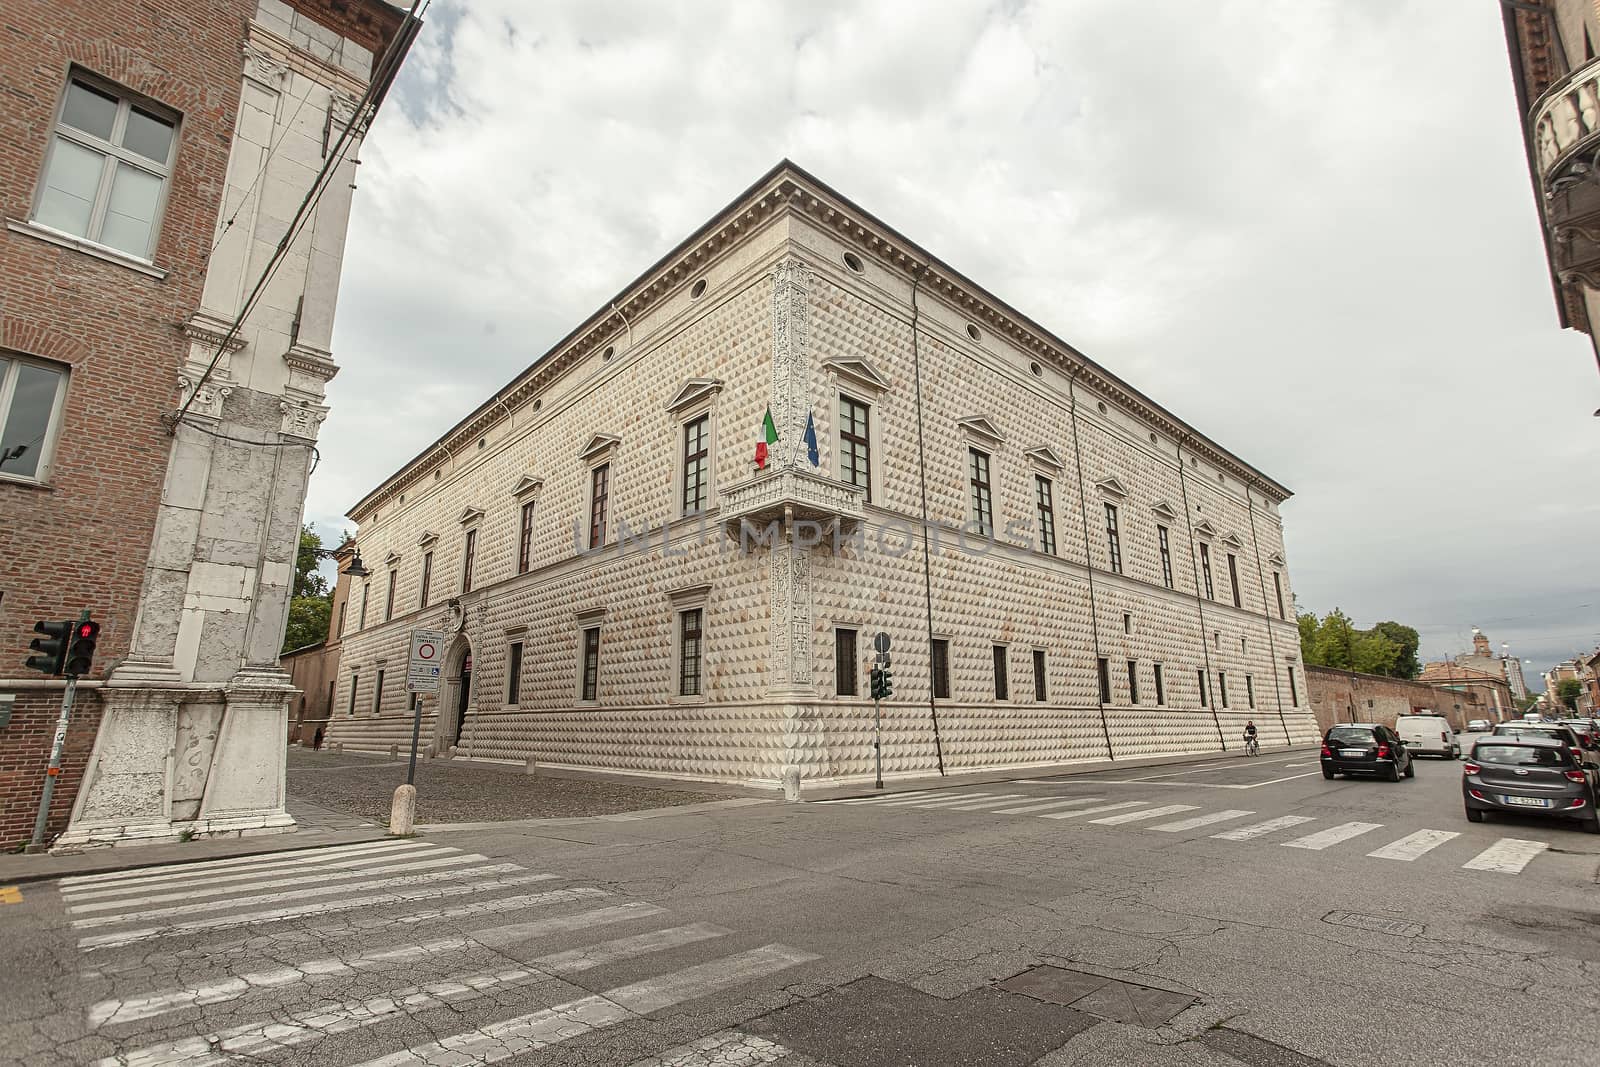 Palazzo dei Diamanti in Ferrara in Italy 5 by pippocarlot